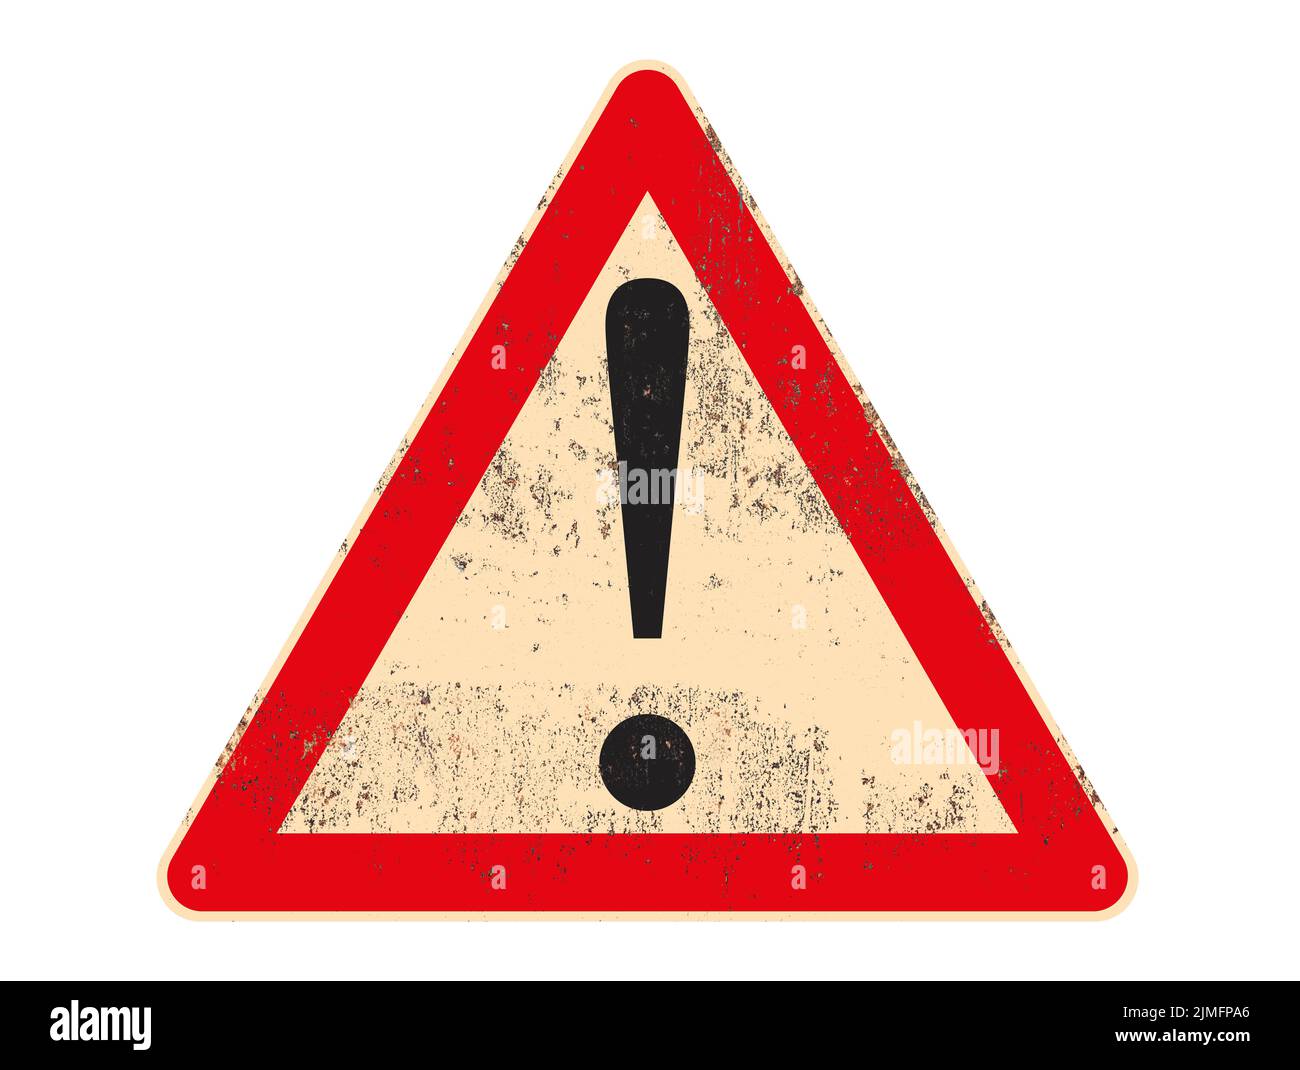 Verkehrszeichen Warnsymbol auf verrosteten und grungigen Metalltafel isoliert auf weißem Hintergrund. Hochwertige Illustration Stockfoto